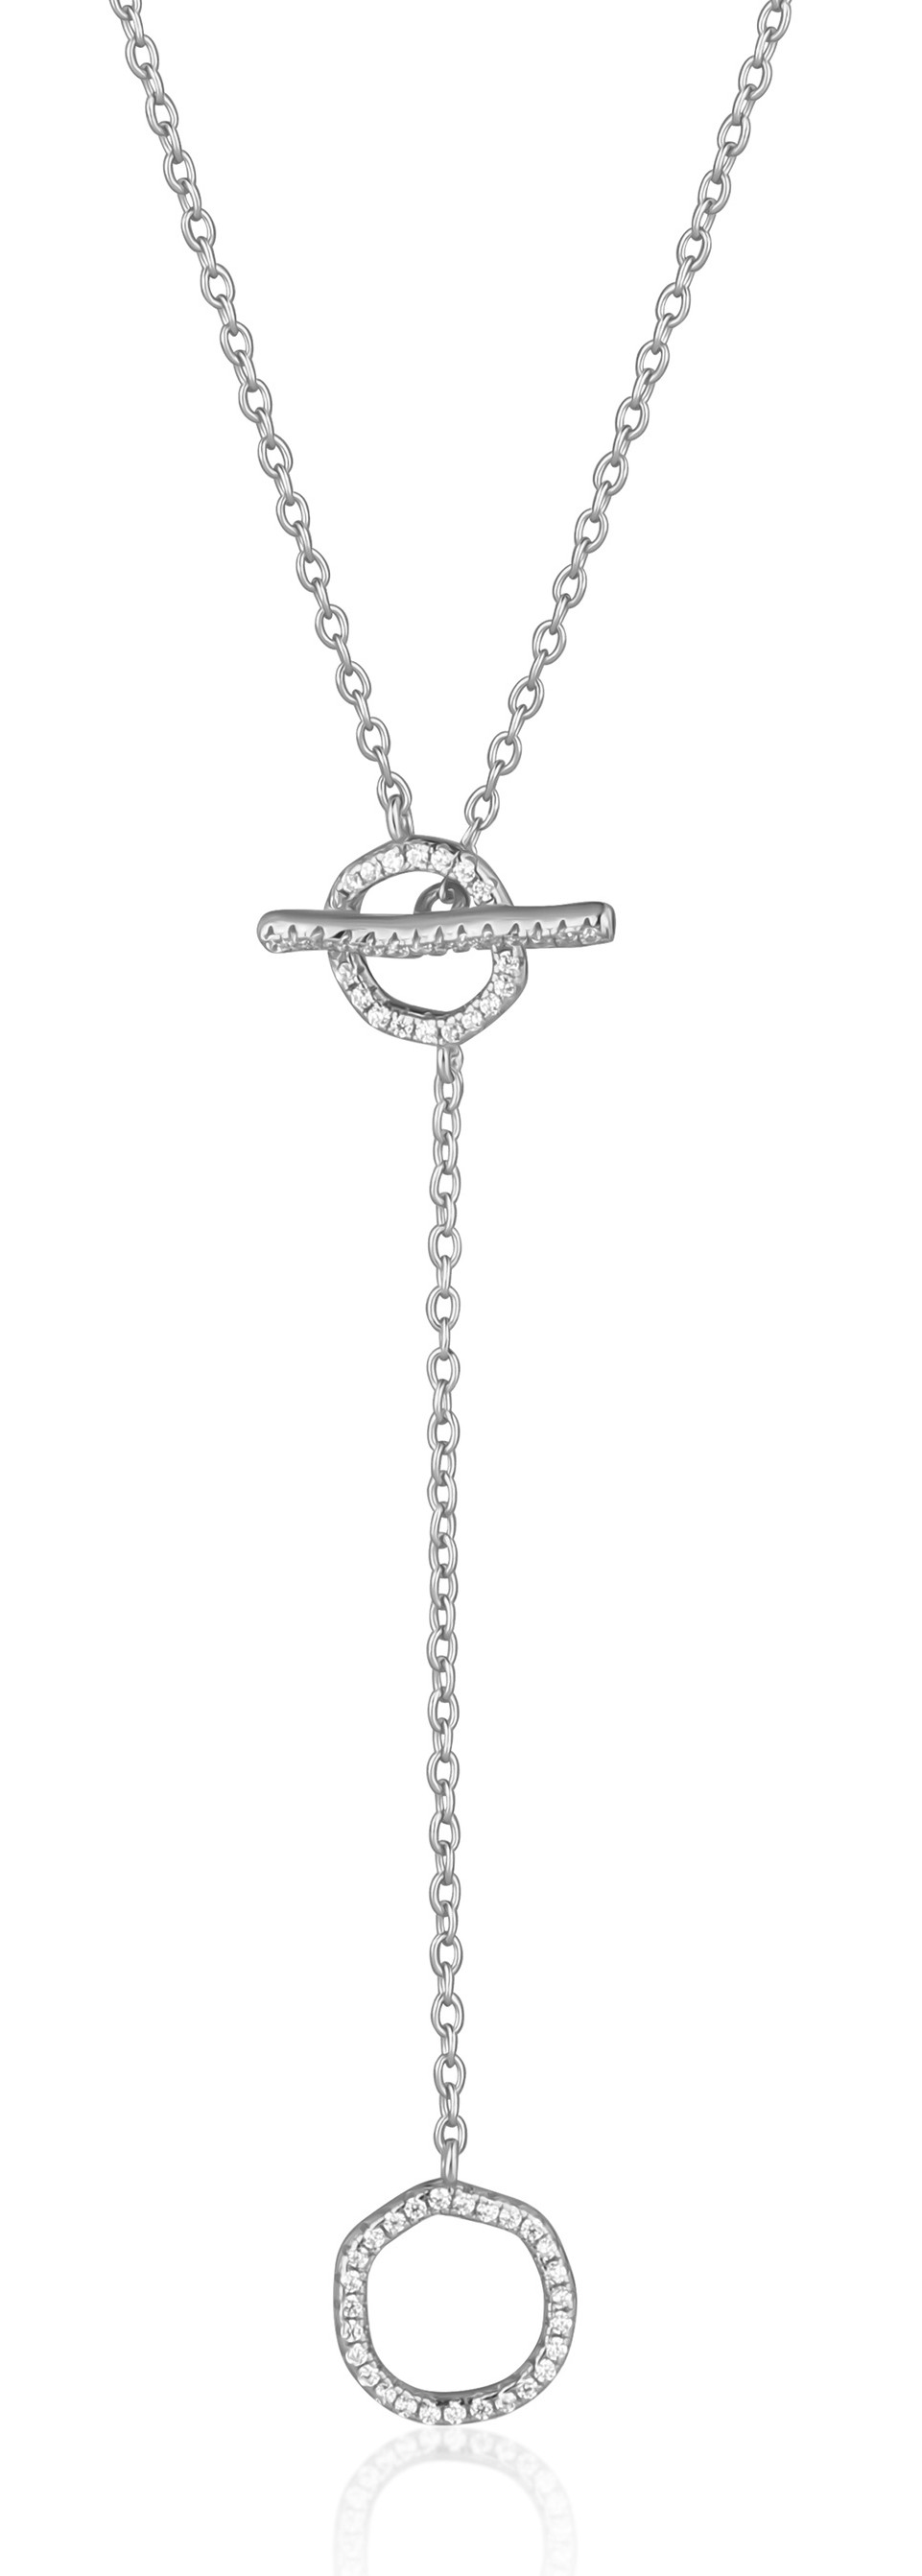 JVD Půvabný stříbrný náhrdelník se zirkony SVLN0458X75BI45